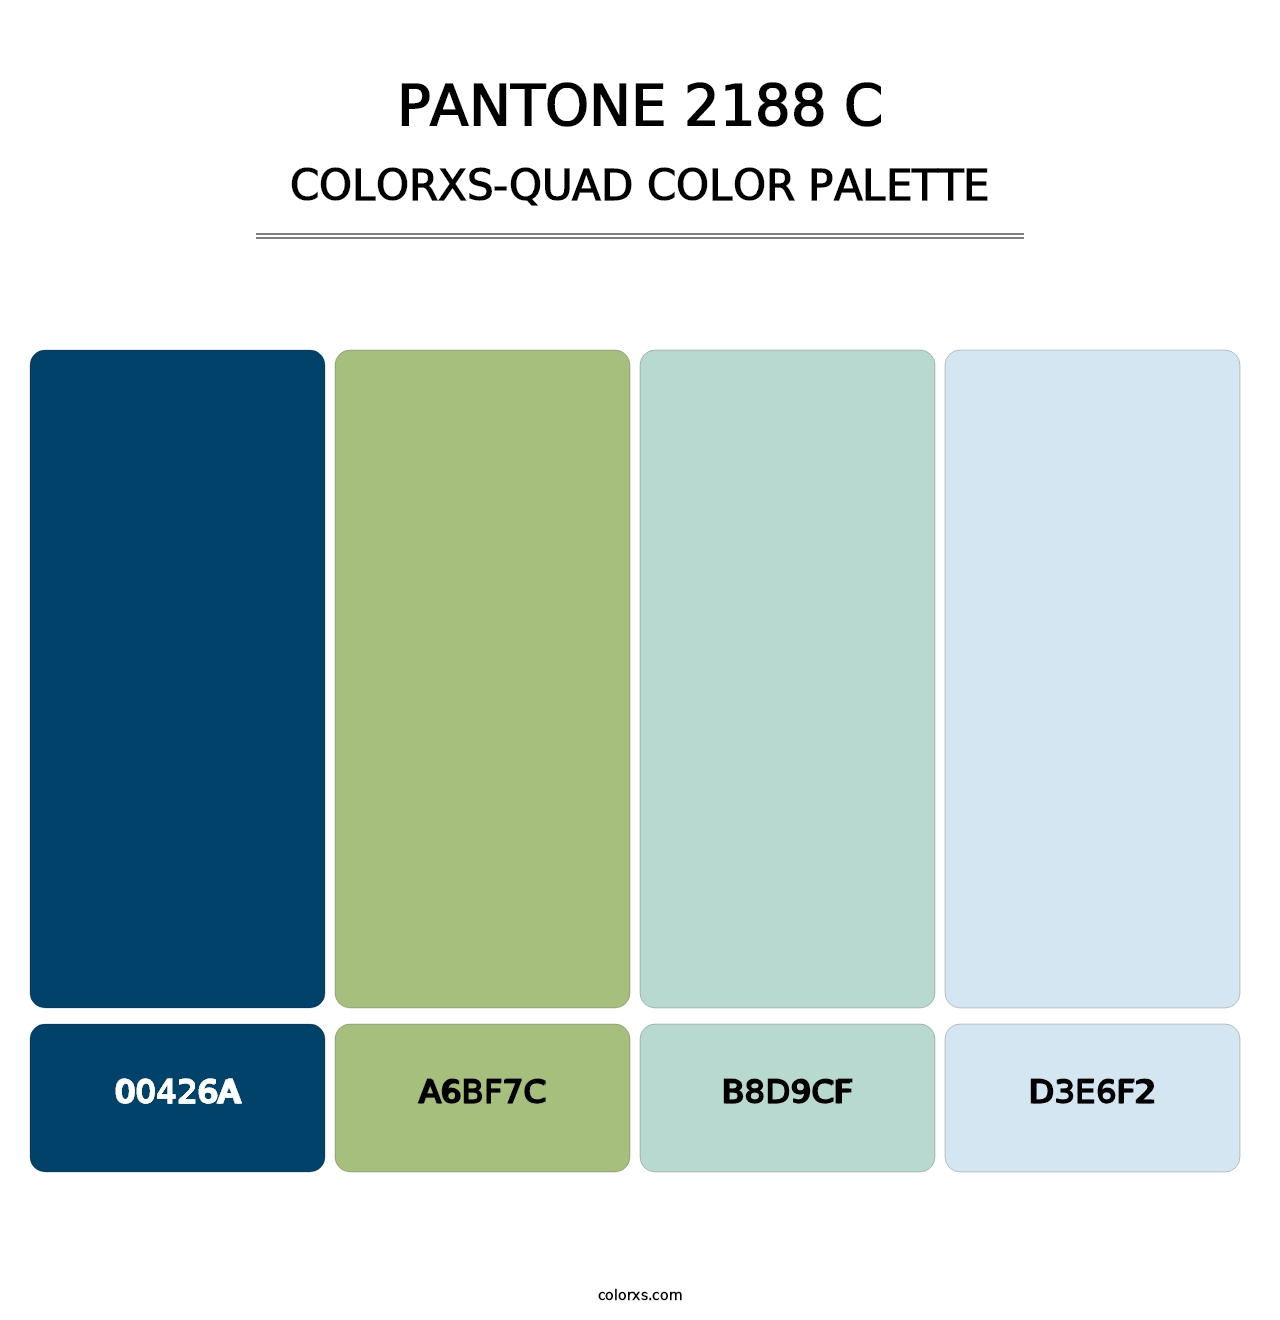 PANTONE 2188 C - Colorxs Quad Palette